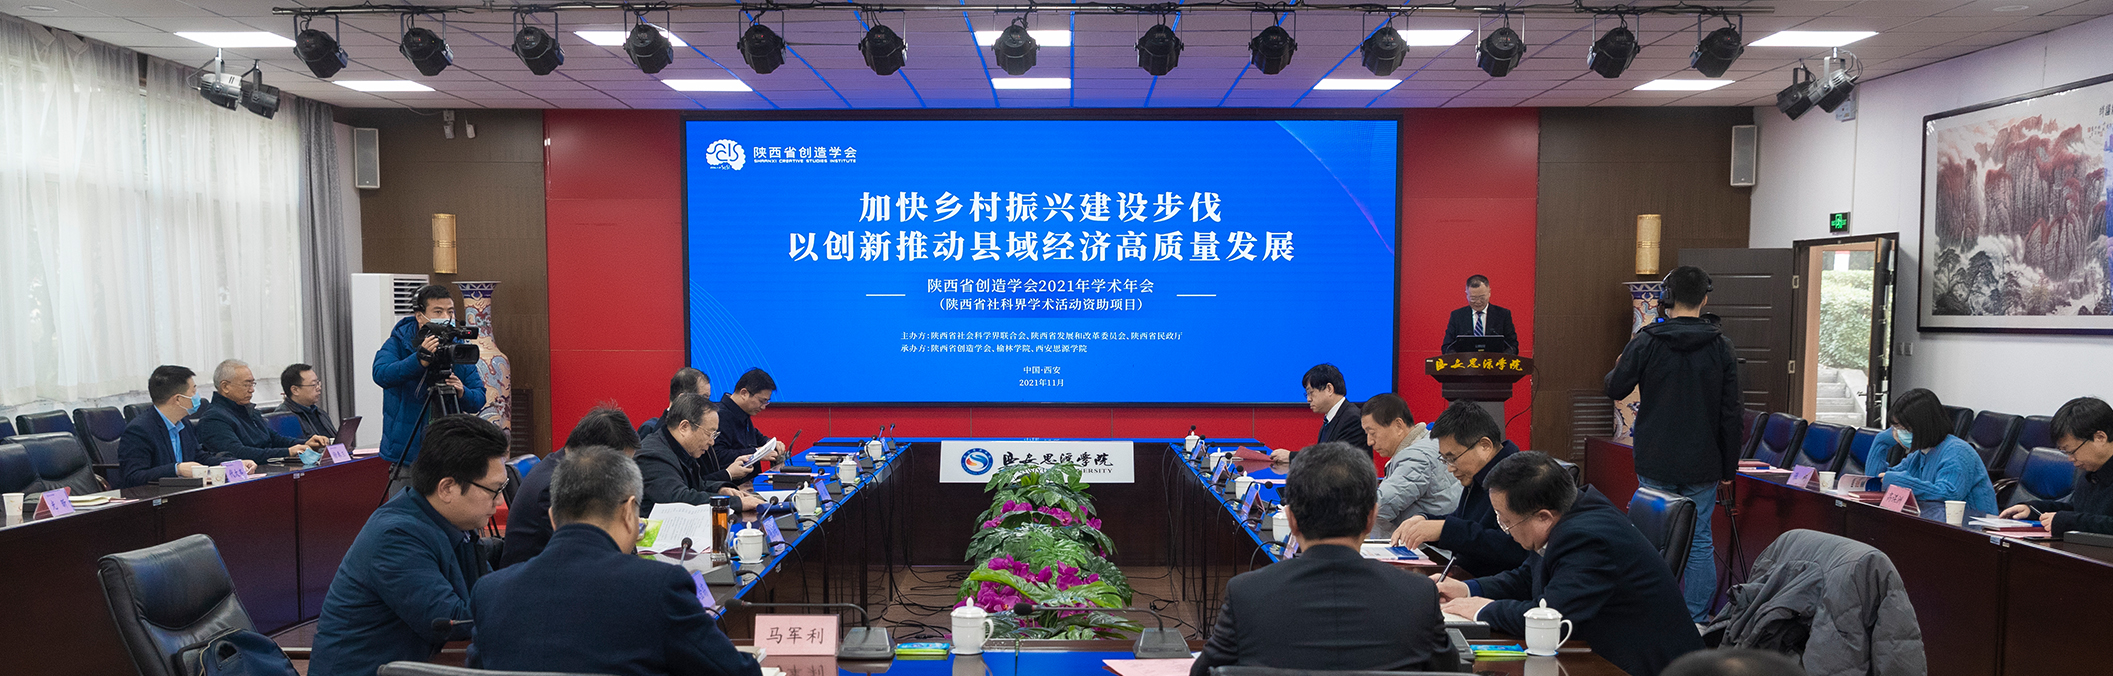 陕西省创造学会2021年学术年会暨县域经济专业委员会成立大会在西安思源学院召开